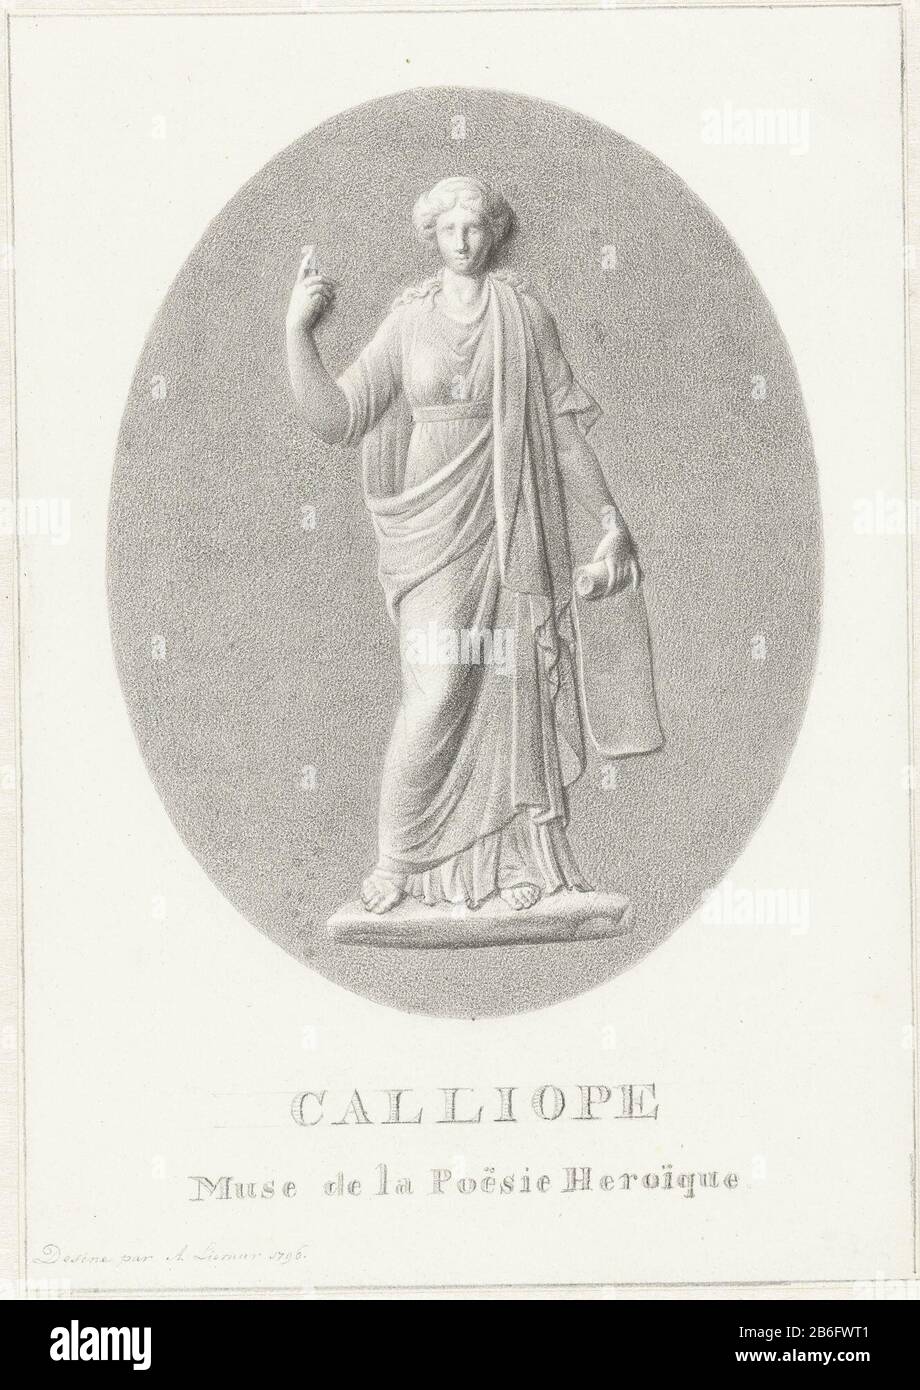 Calliope Calliope, Muse of Epos. Hersteller : Künstler: Alexander Liernur dating: 1796 Physikalische Merkmale: Bleistift-Material: Bleistift-Papier Abmessungen: H 241 mm × W 169 mm Betreff: Calliope (eine der Musen); "Calliope" (Ripa) Stockfoto